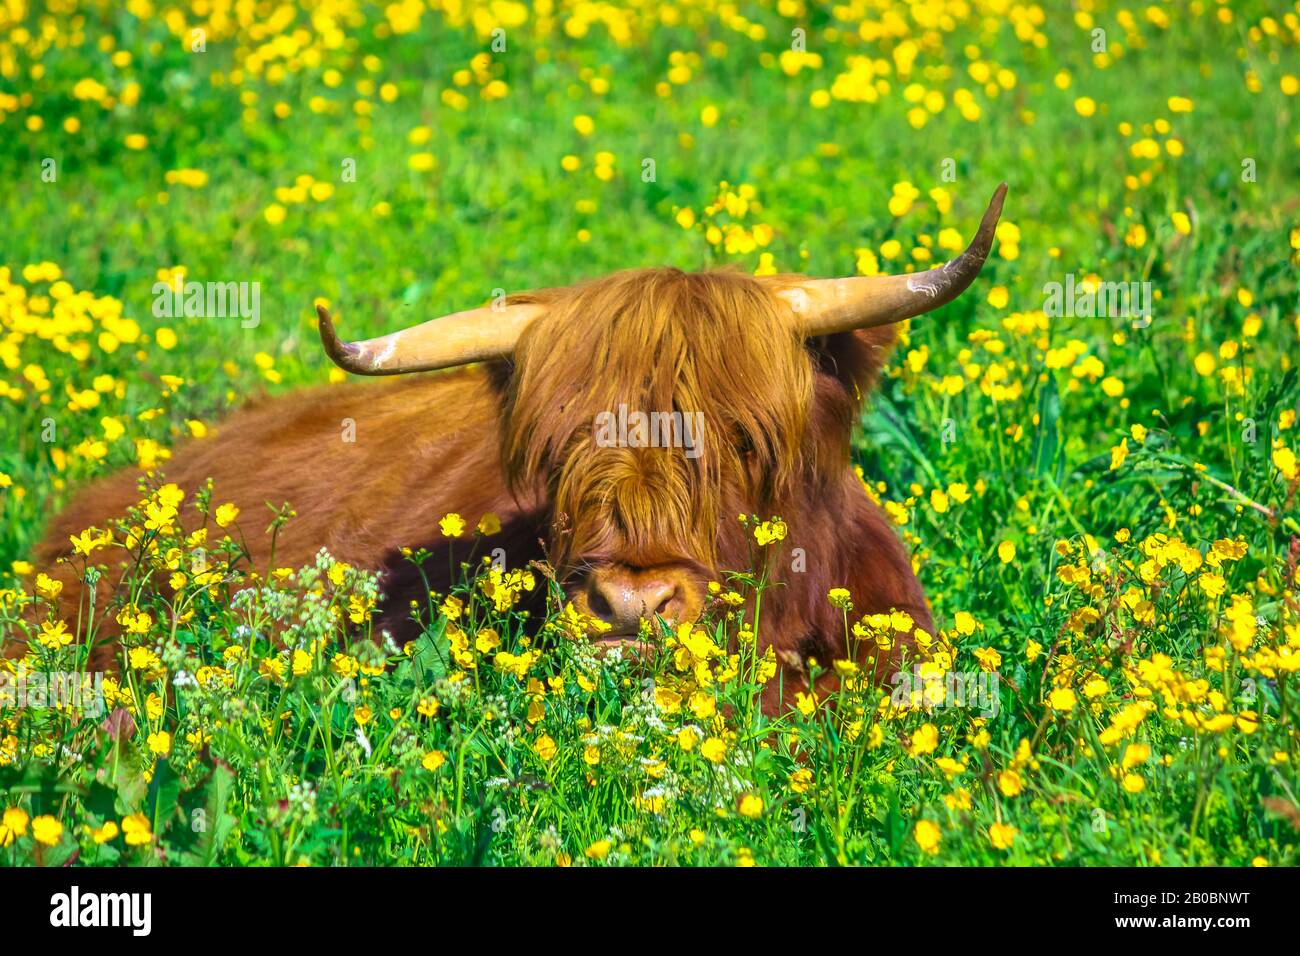 Seduto Highland Red Cow originario delle Highlands scozzesi, seduto in un campo fiorito in primavera nel territorio norvegese. Foto Stock